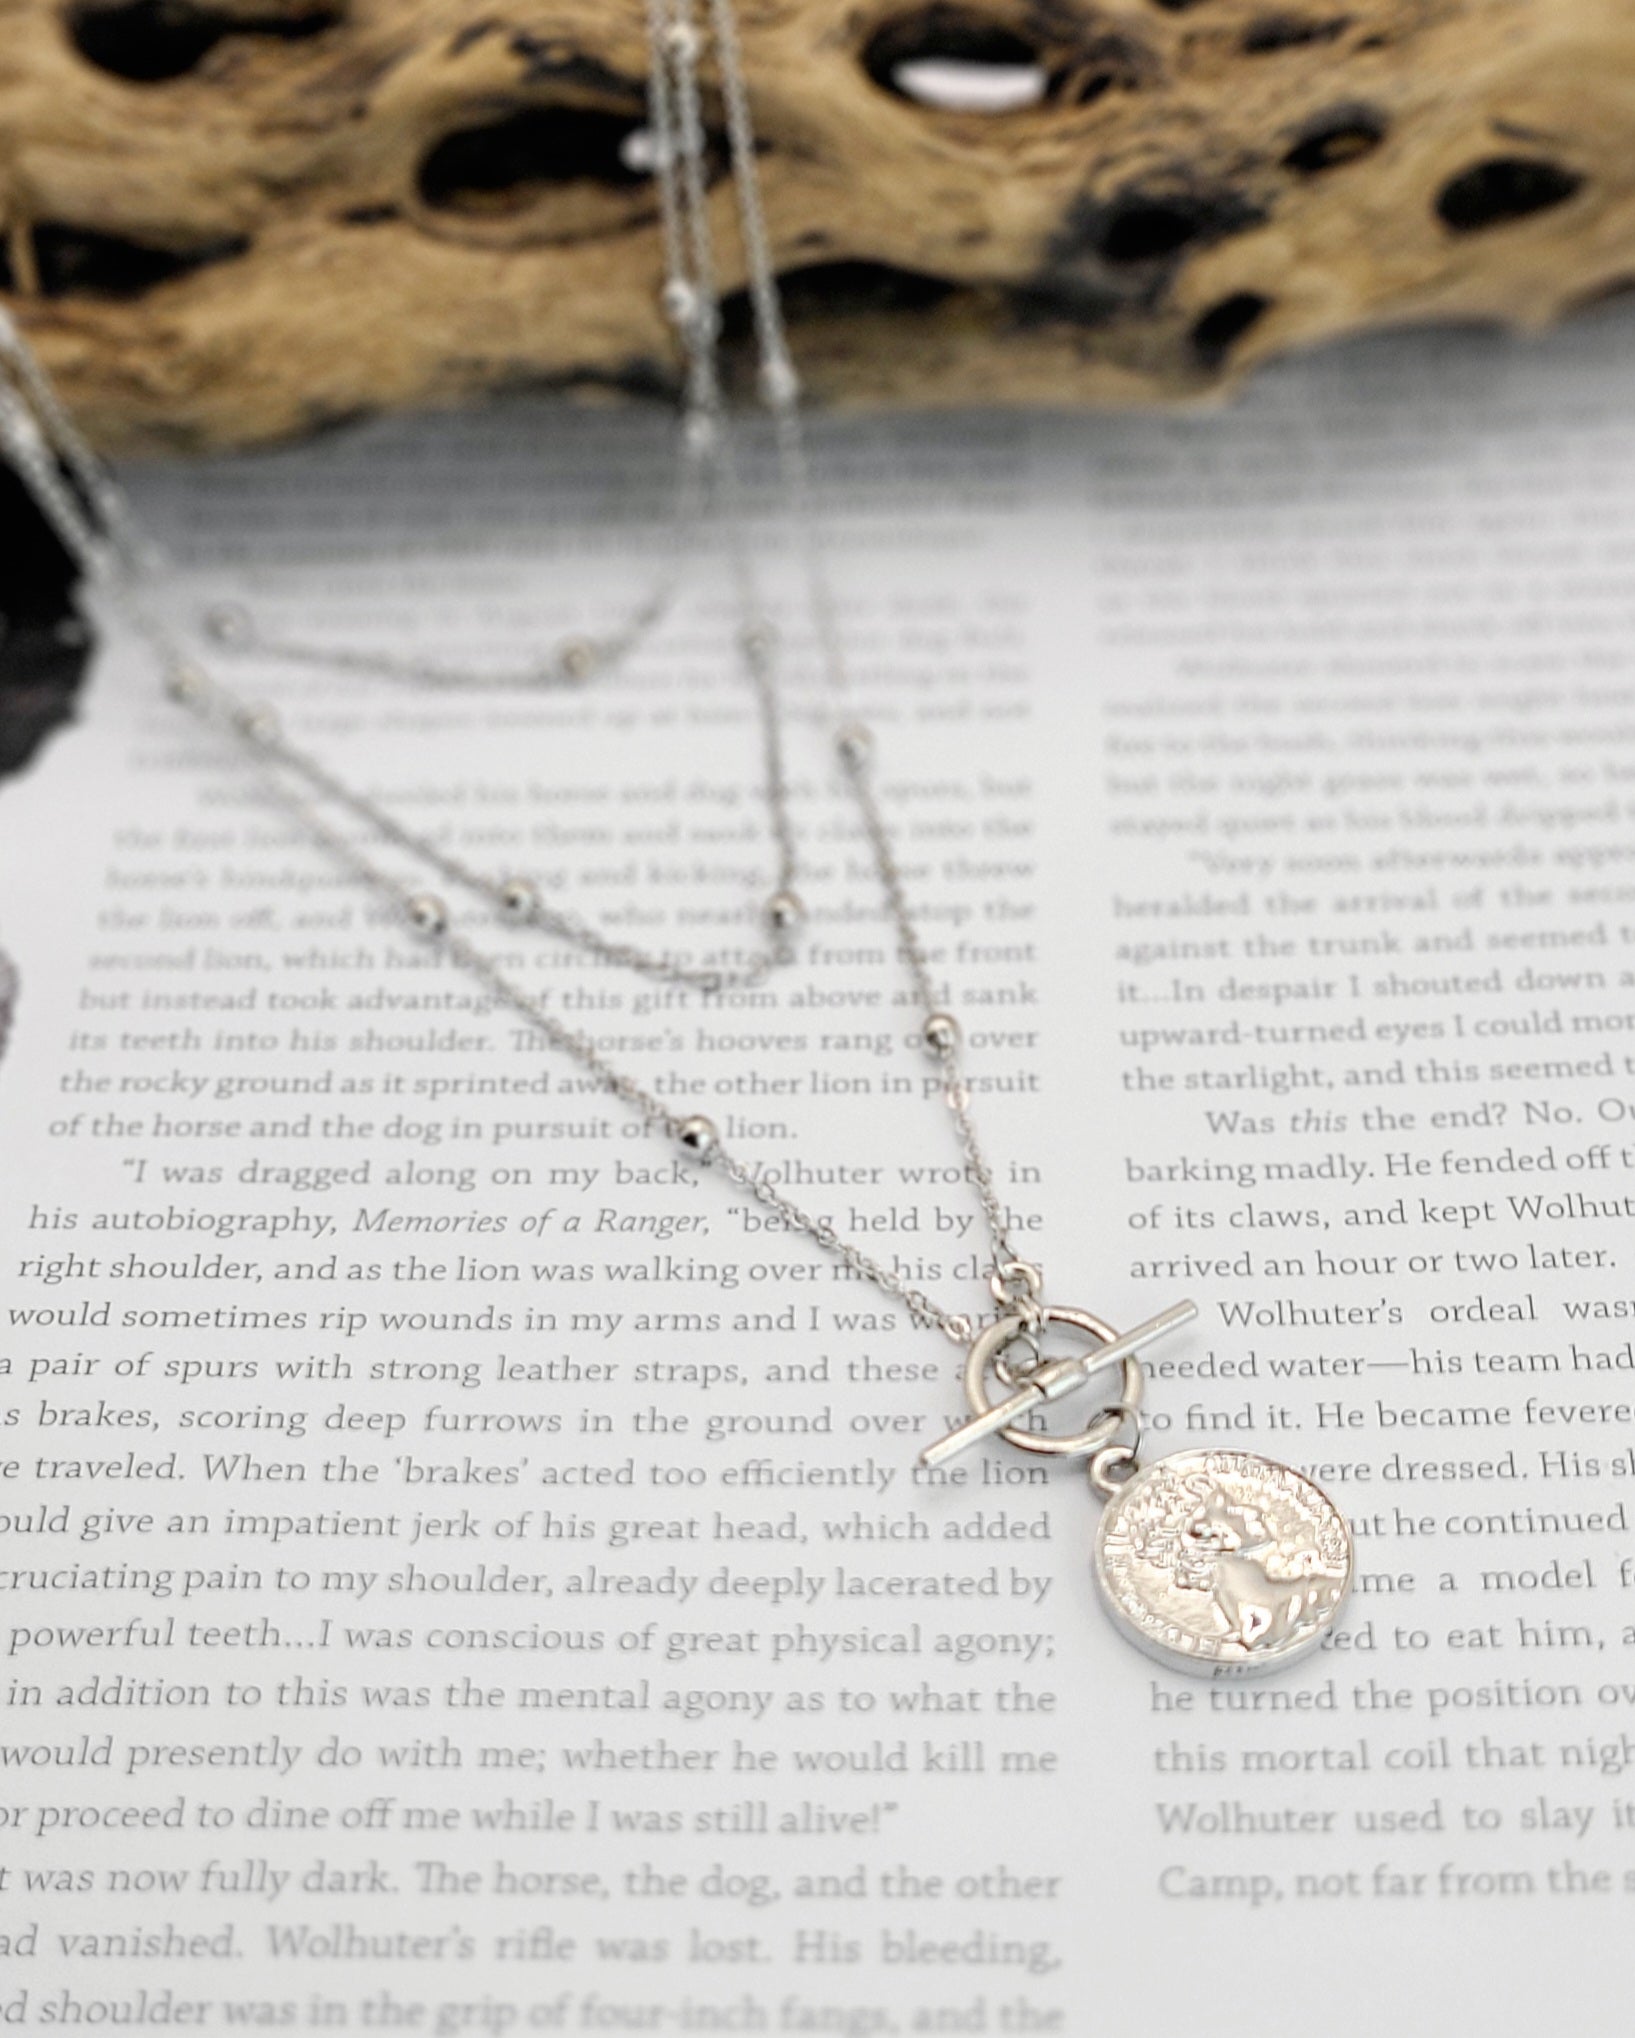 Athena Coin Pendant Necklace